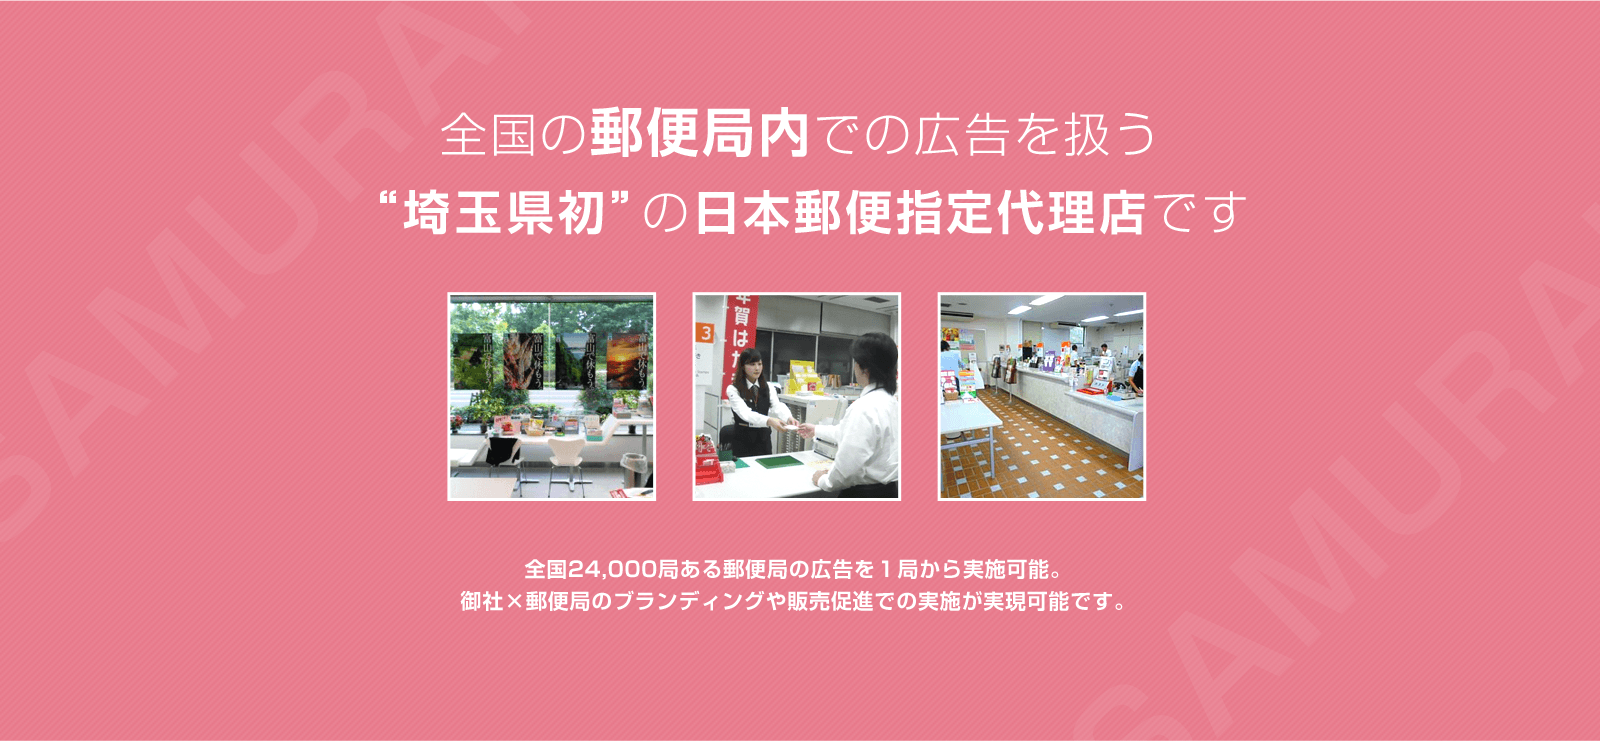 全国の郵便局内での広告を扱う“埼玉県初”の日本郵便指定代理店です全国24,000局ある郵便局の広告を１局から実施可能。御社×郵便局のブランディングや販売促進での実施が実現可能です。